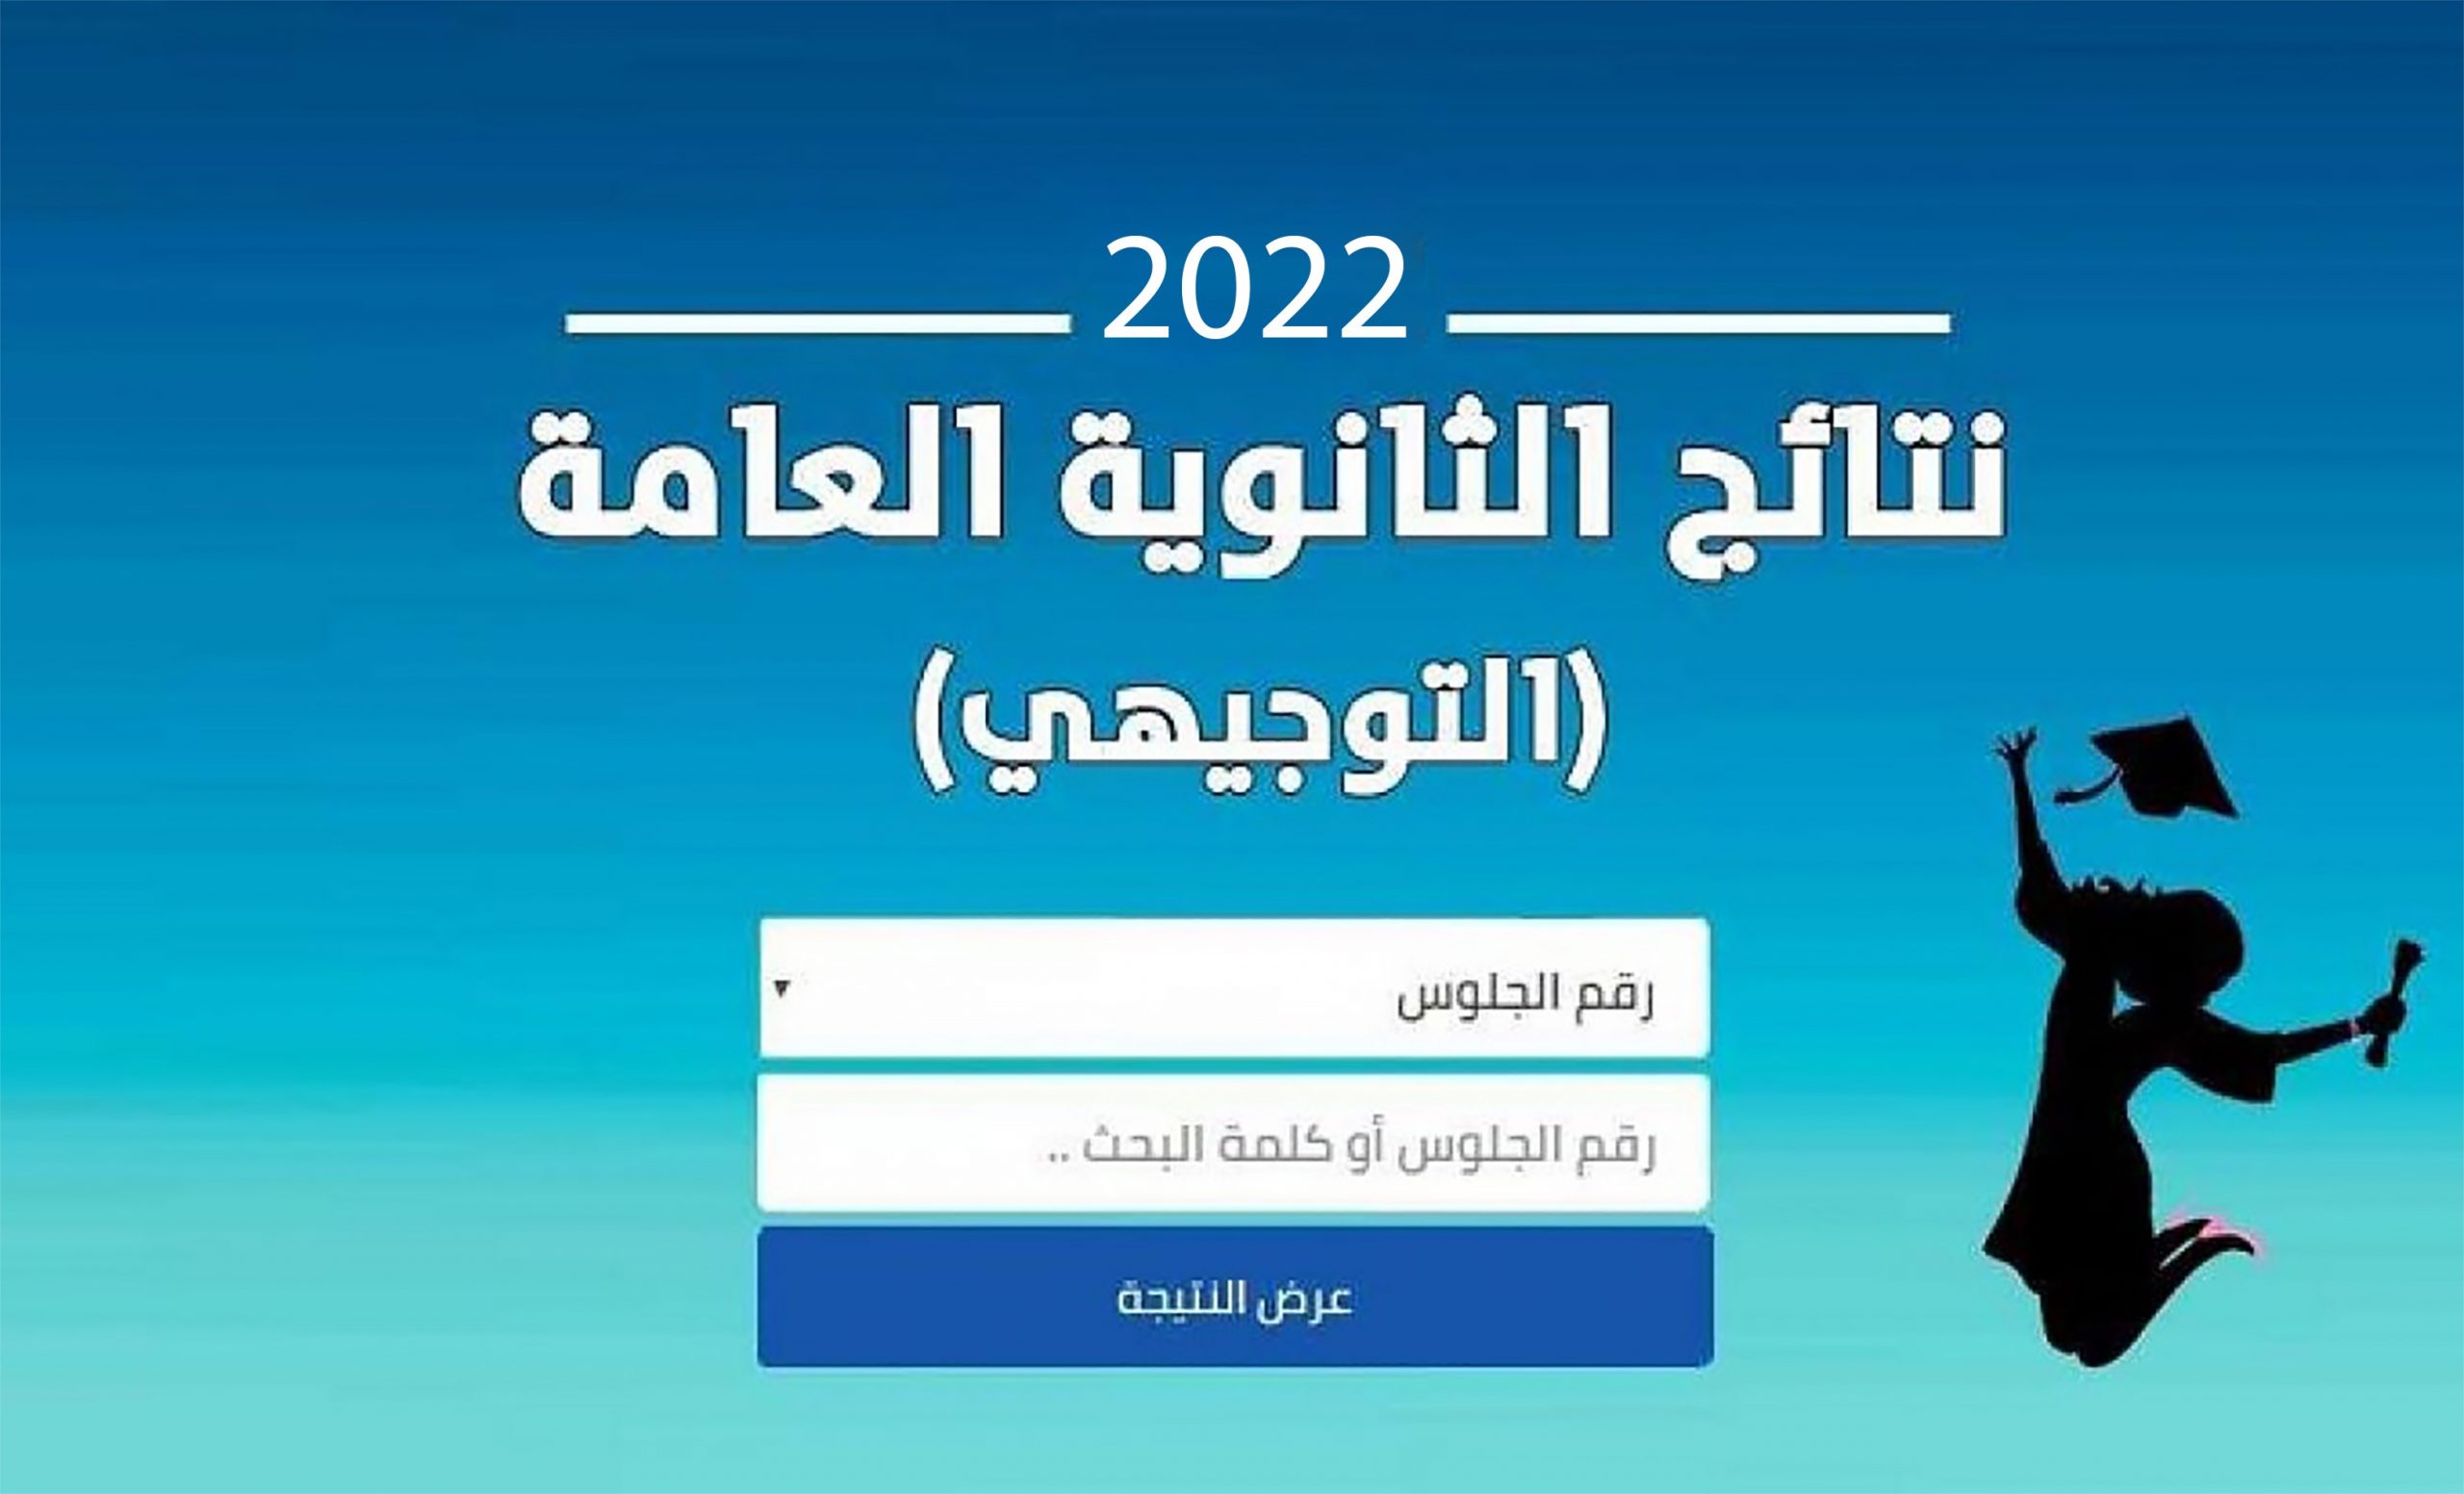 الثانوية العامة فلسطين 1 scaled - رابط نتائج الثانوية العامة فلسطين 2022 برقم الجلوس والإسم موقع نتائج التوجيهي